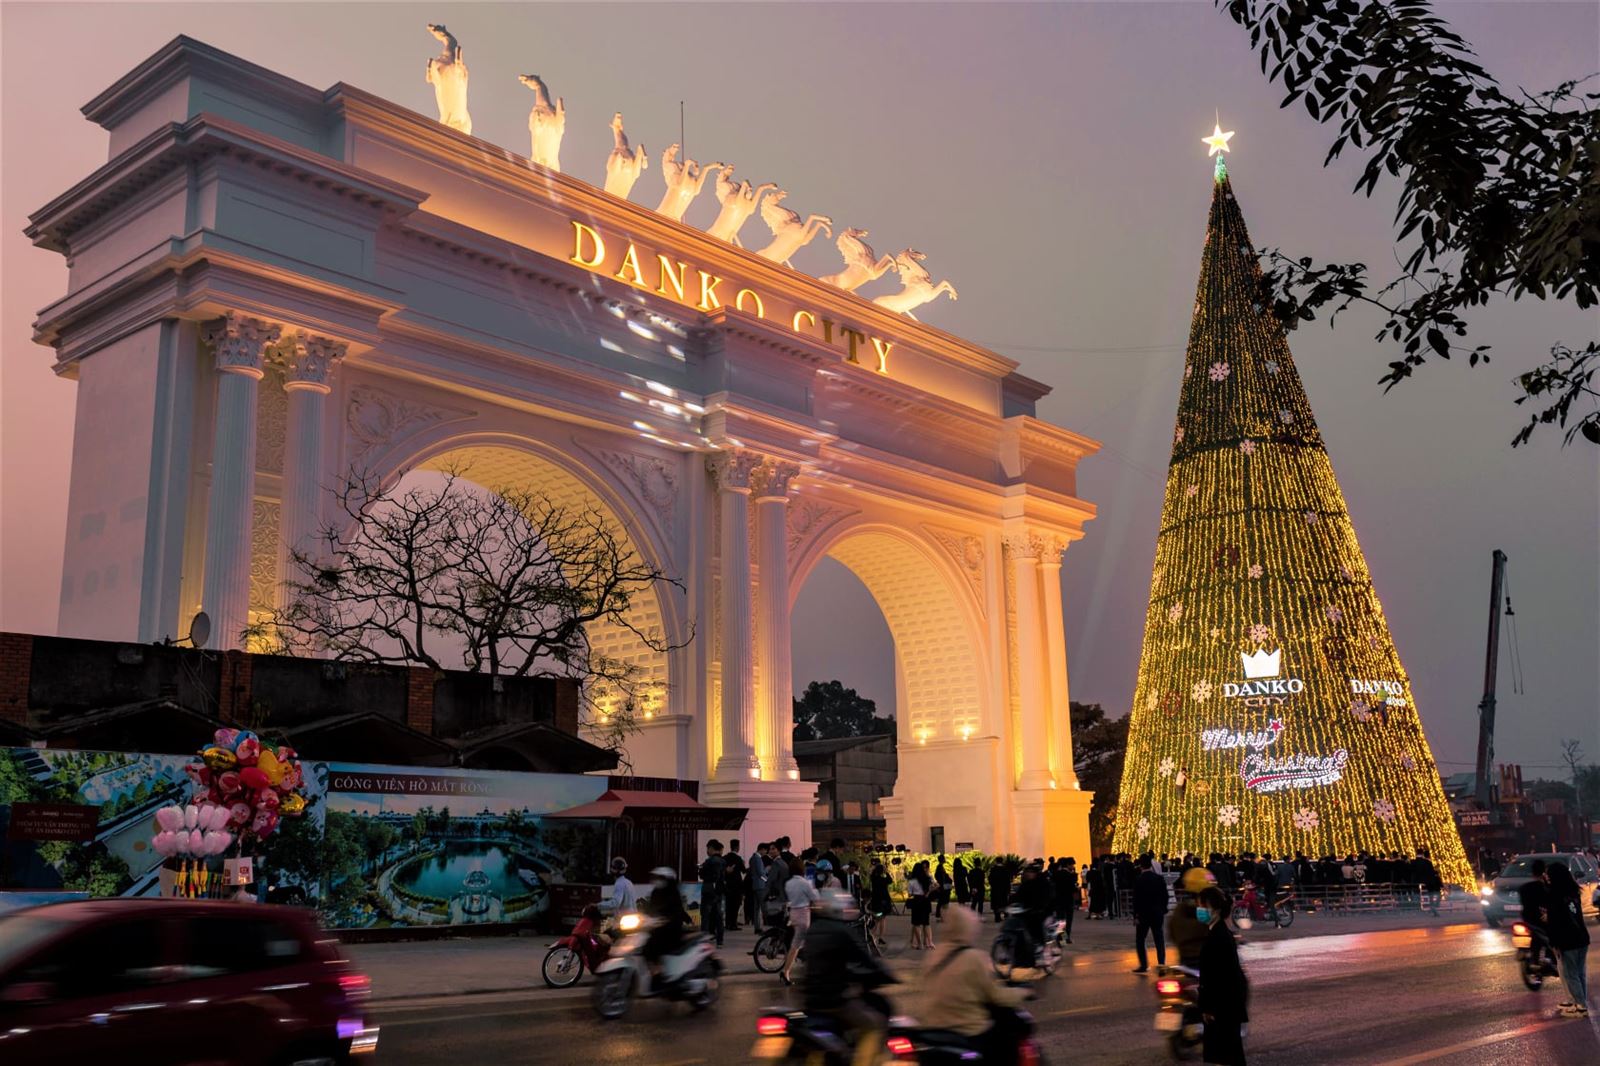 Lễ hội thắp sáng cây thông Noel tại Danko City